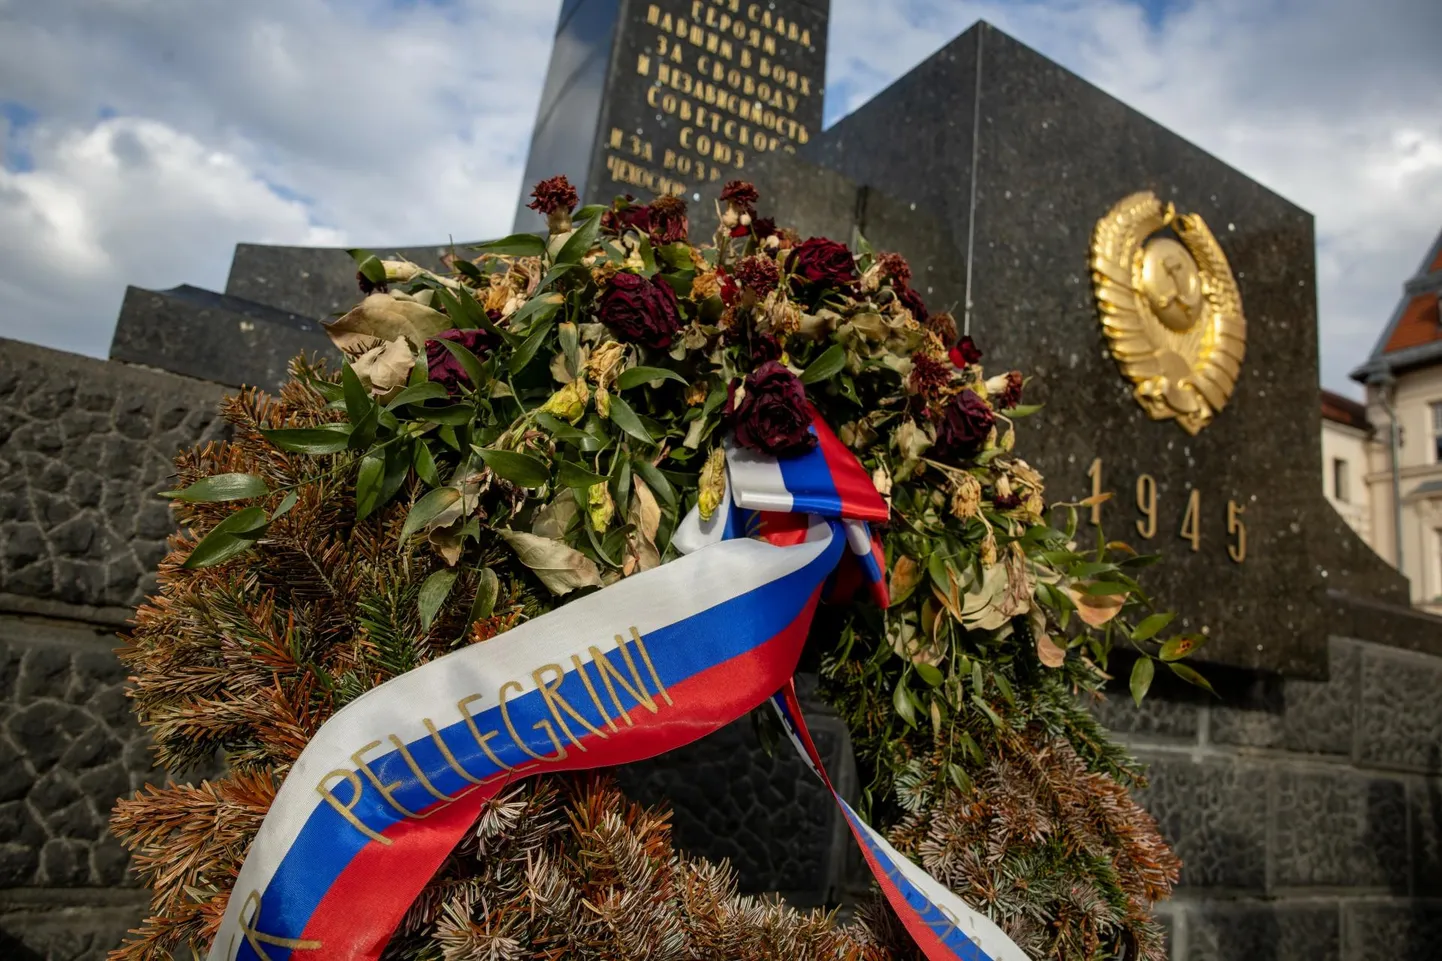 Slovakkia presidendiks valitud Peter Pellegrini nimega pärg Banská Bystricas asuva Nõukogude «vabastajate» mälestusmärgi jalamil.